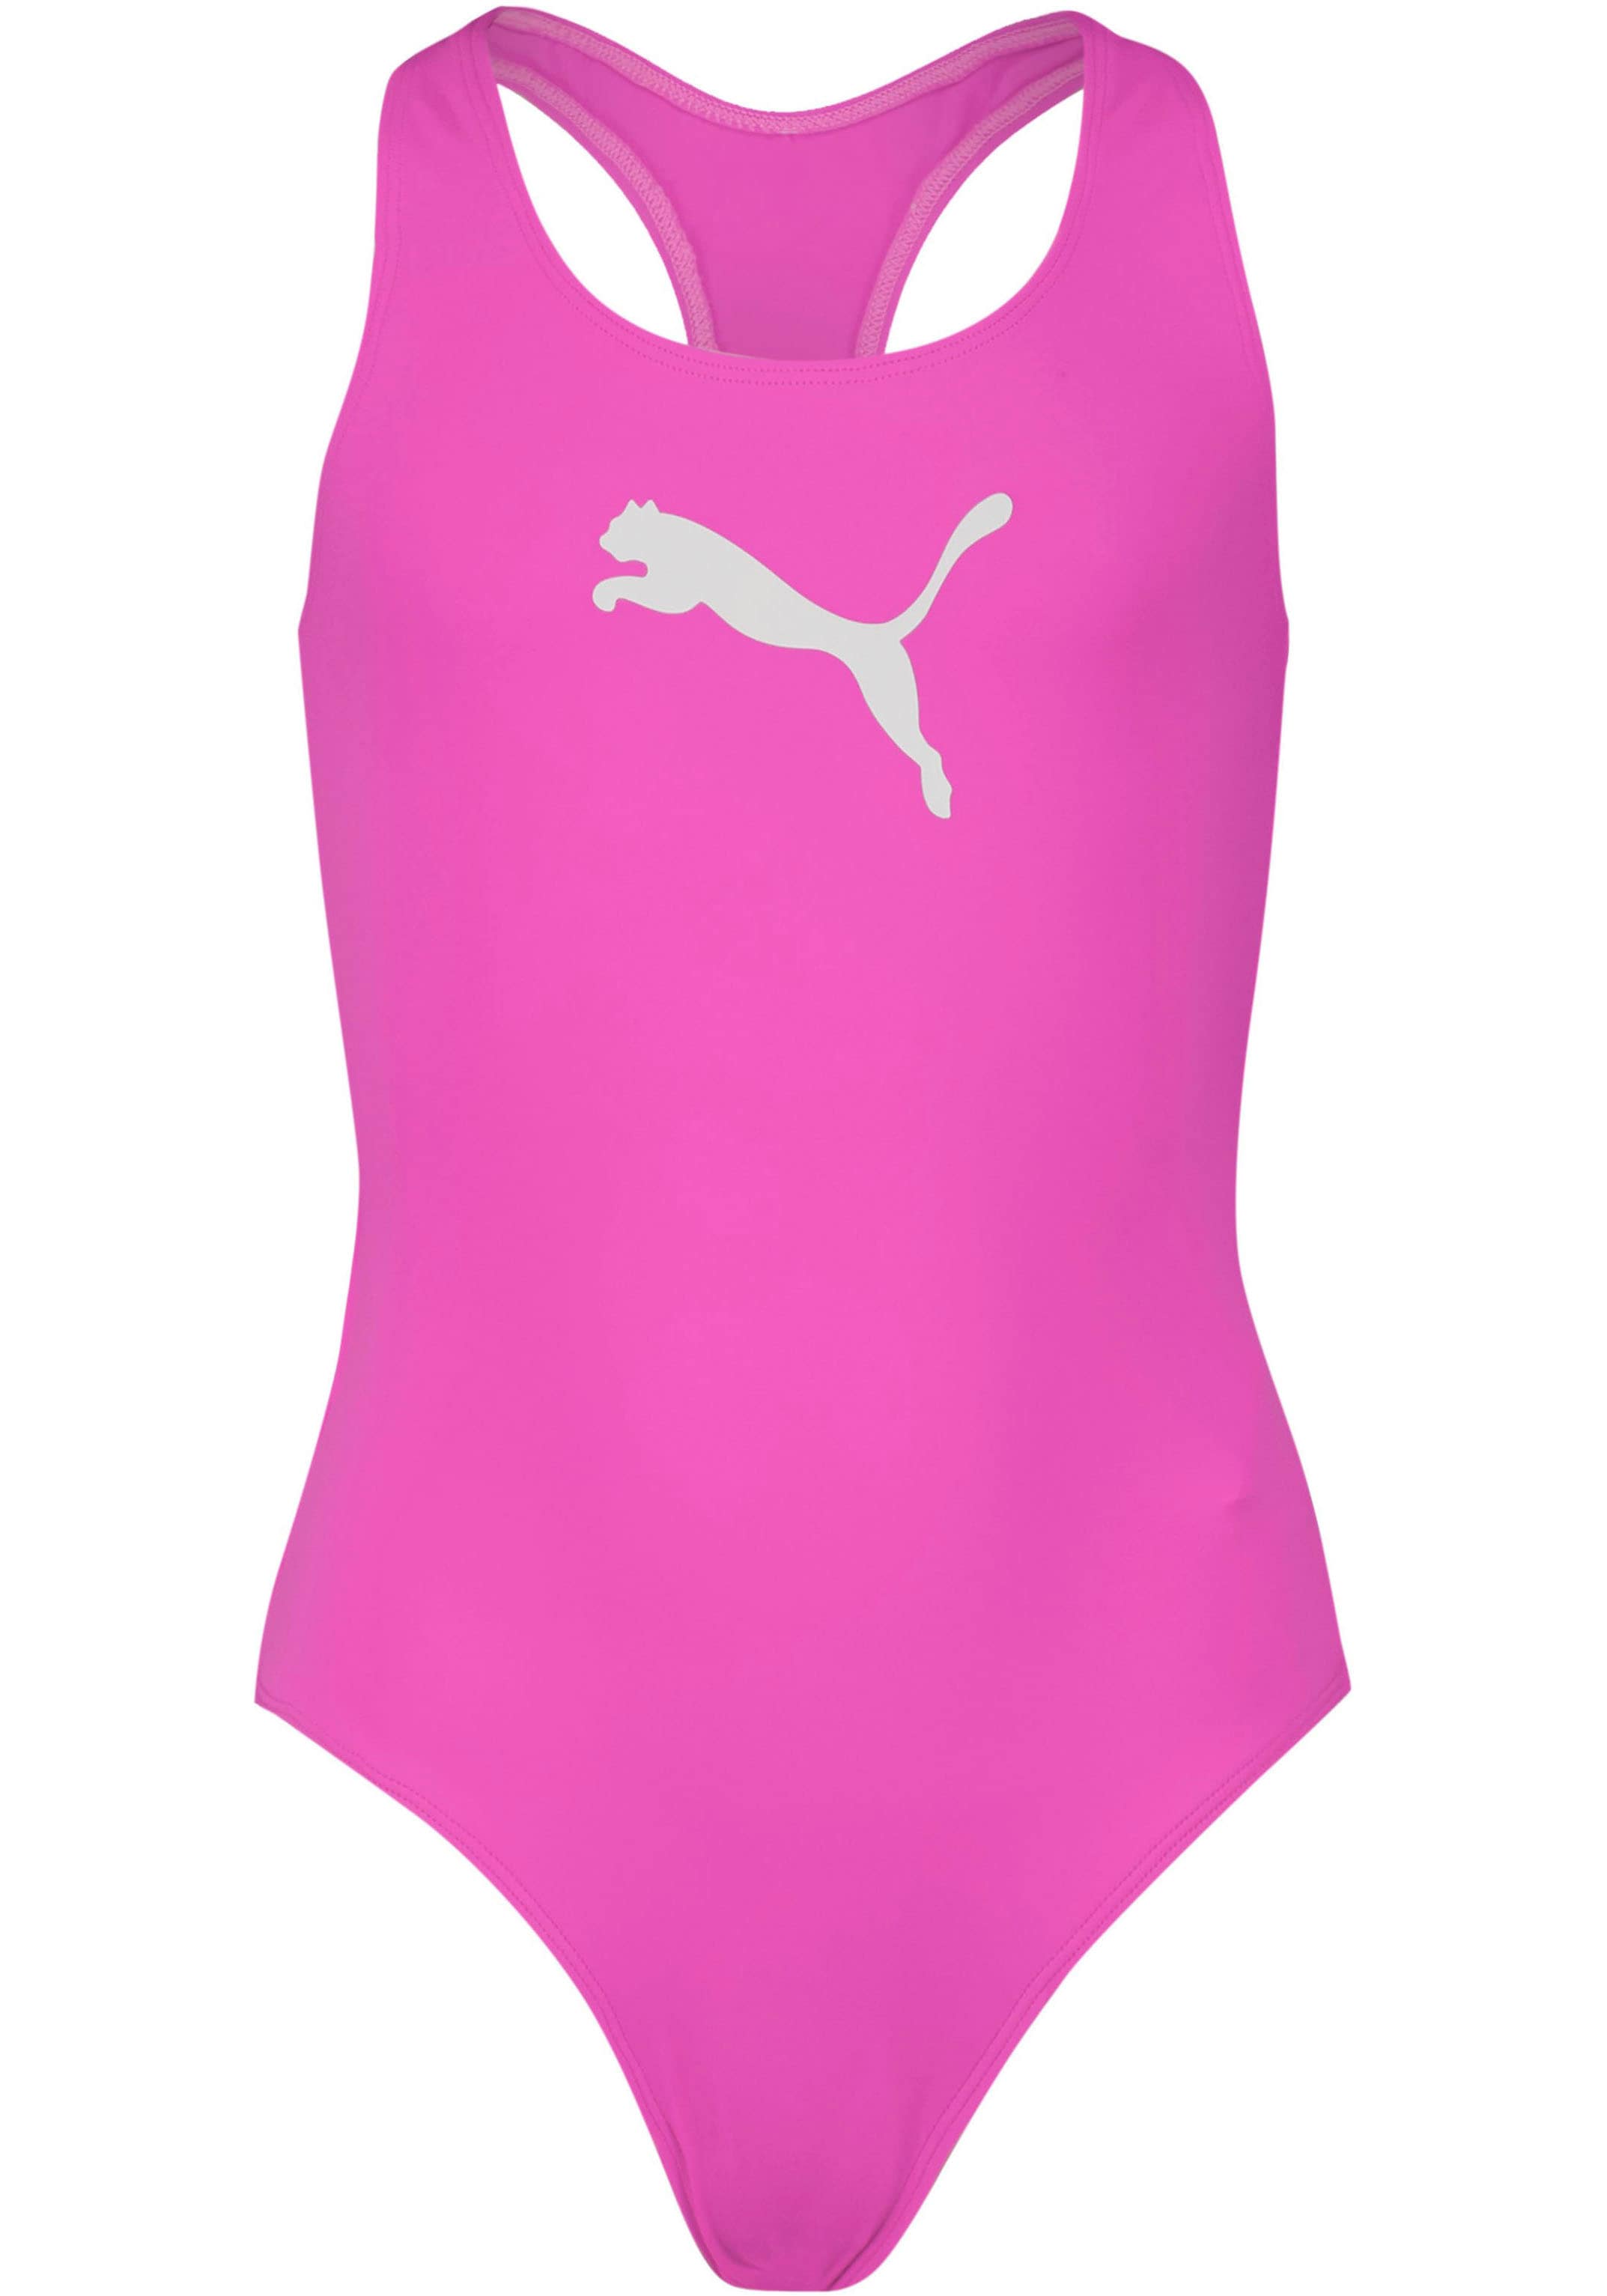 PUMA Badeanzug, Mädchen-Schwimmanzug in Racerback-Passform